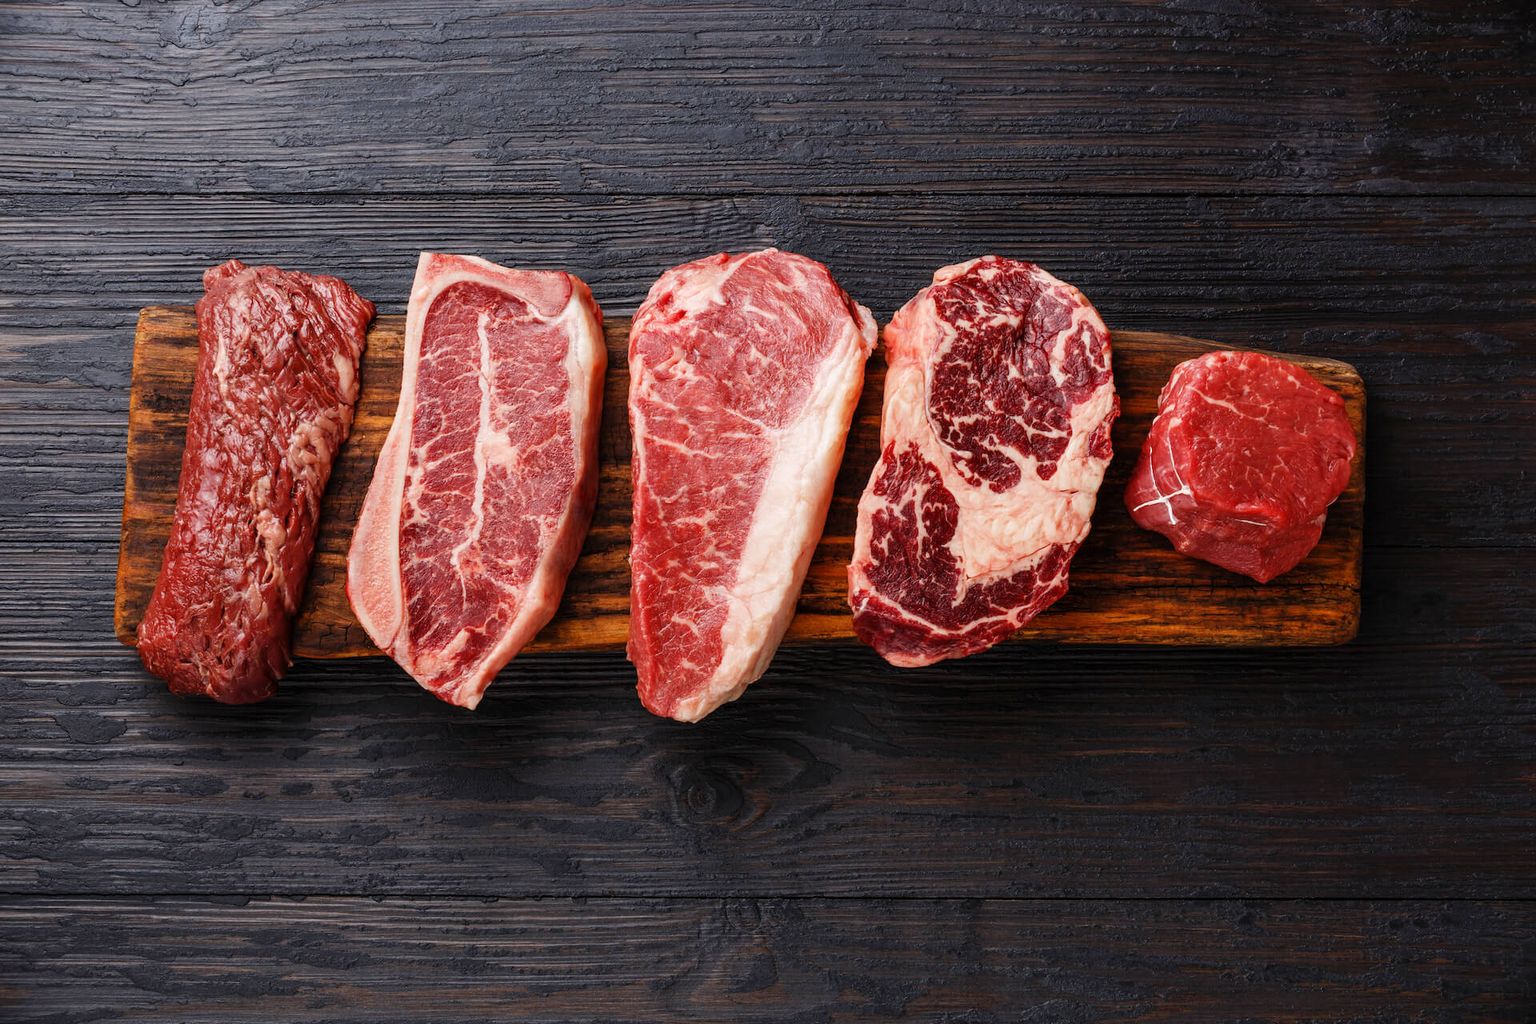 Variety of Raw Black Angus Prime Fleisch Steaks Machete, Blade auf Knochen, Striploin, Rib eye, Tenderloin Filet Mignon auf Holzbrett Kopienraum